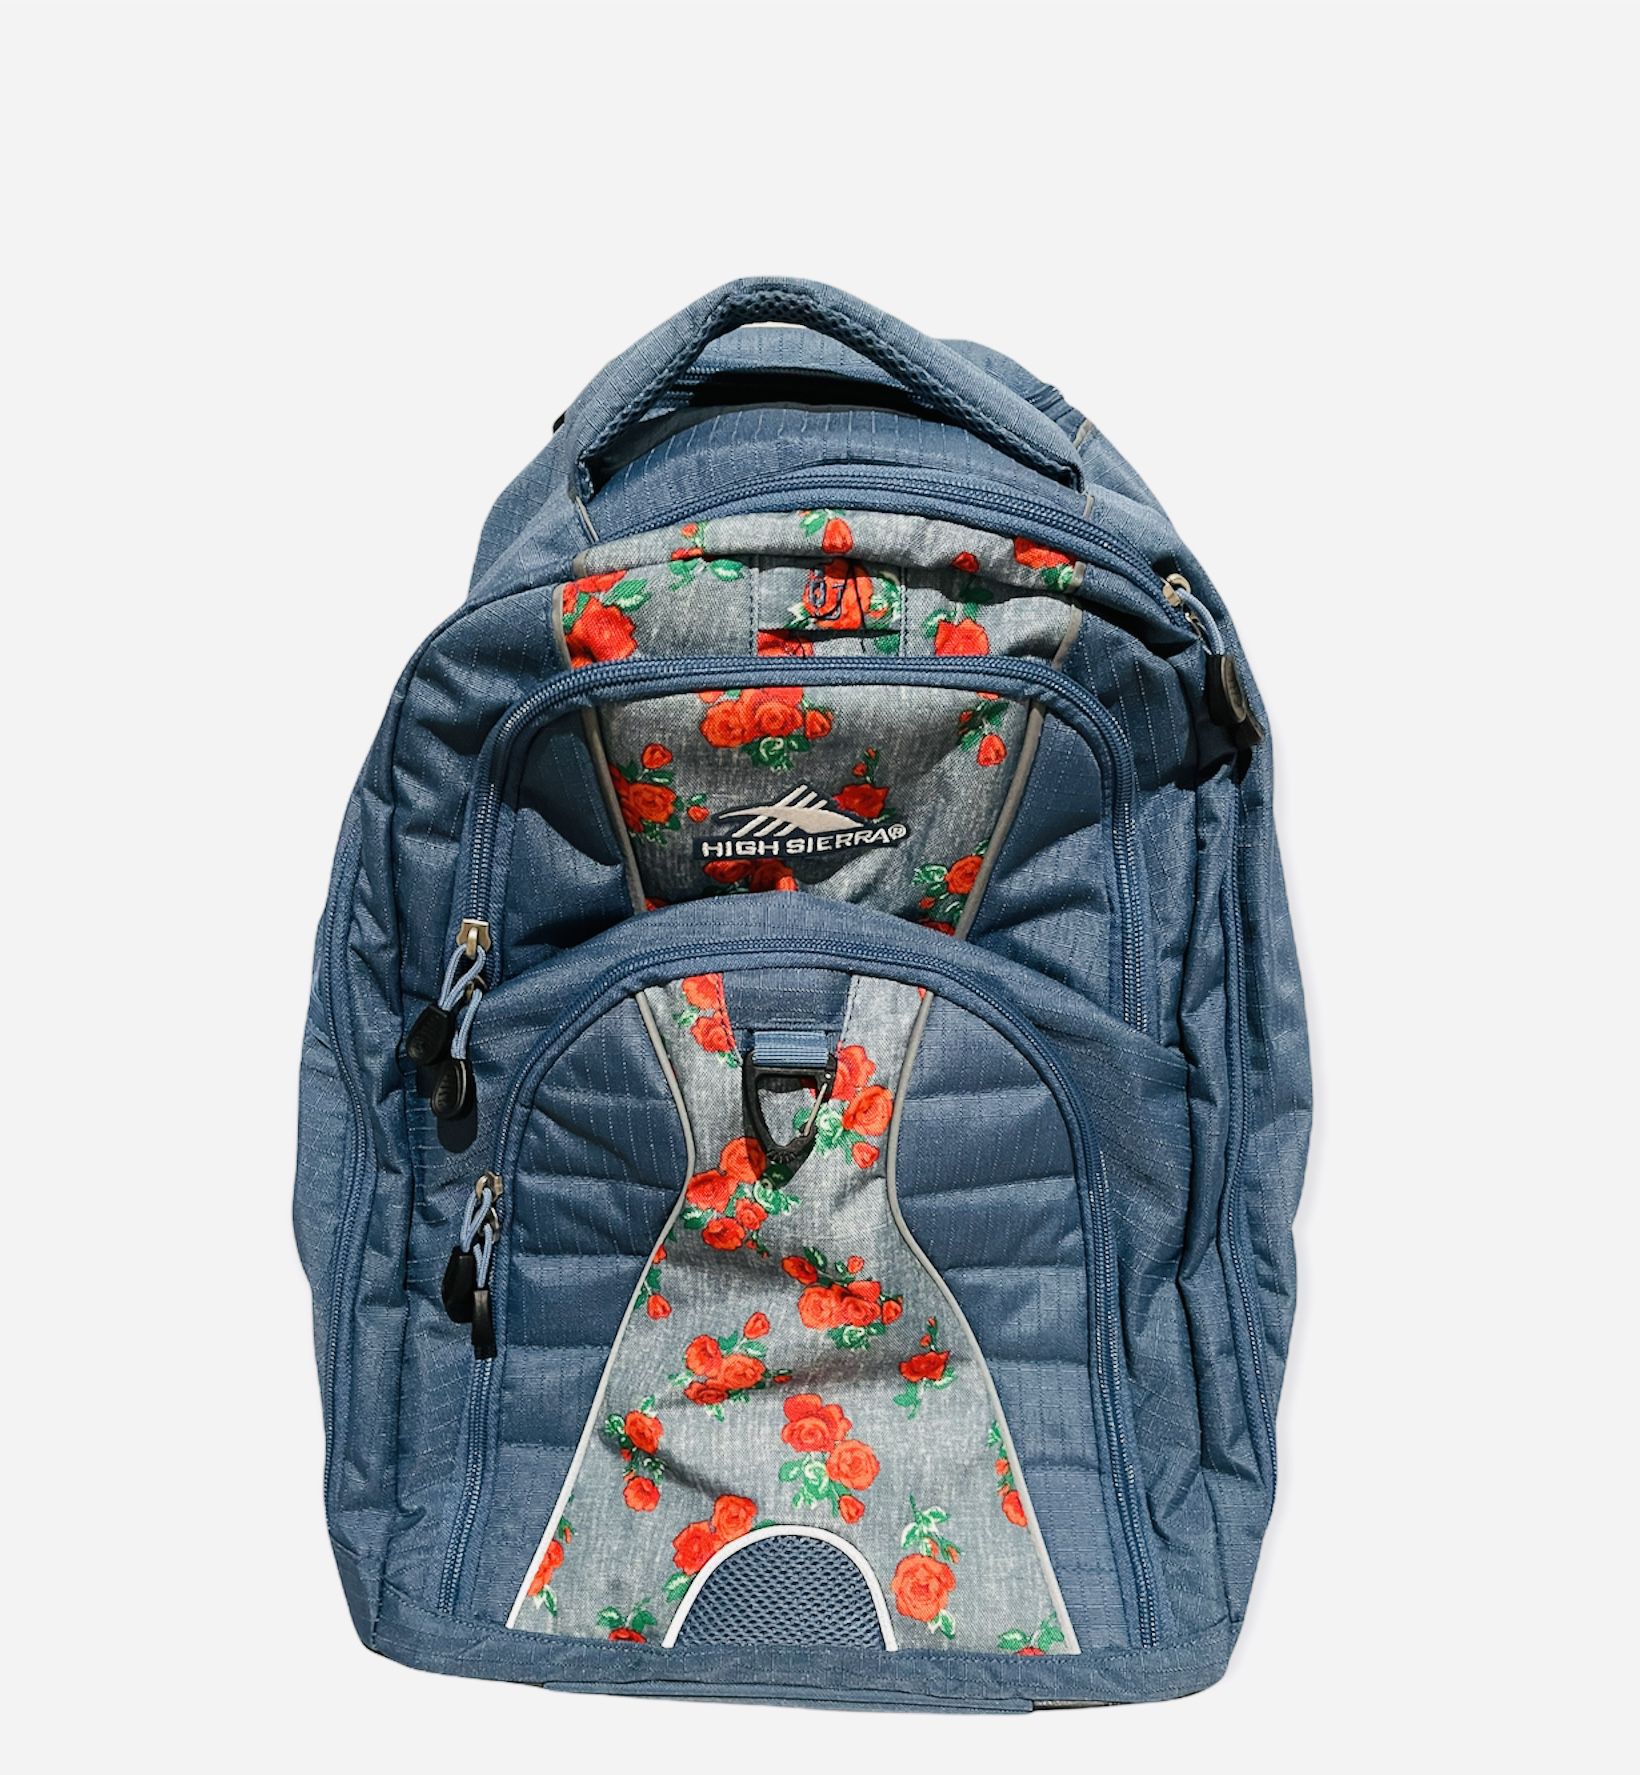 High Sierra Wheeled Backpack